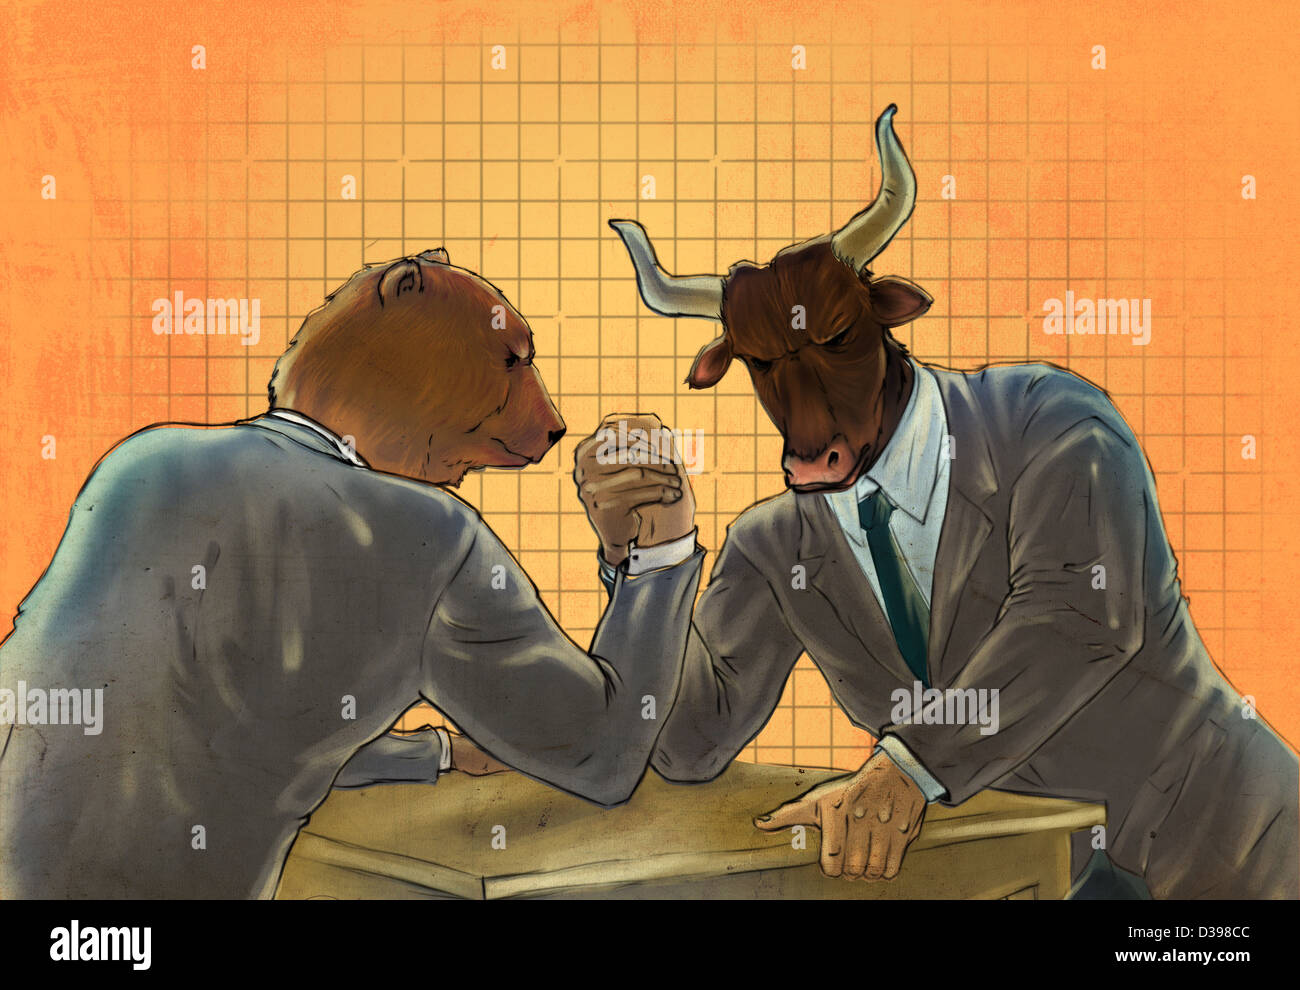 Orso antropomorfo e bull wrestling braccio che rappresenta il concetto di orso vs. mercato Bull Foto Stock